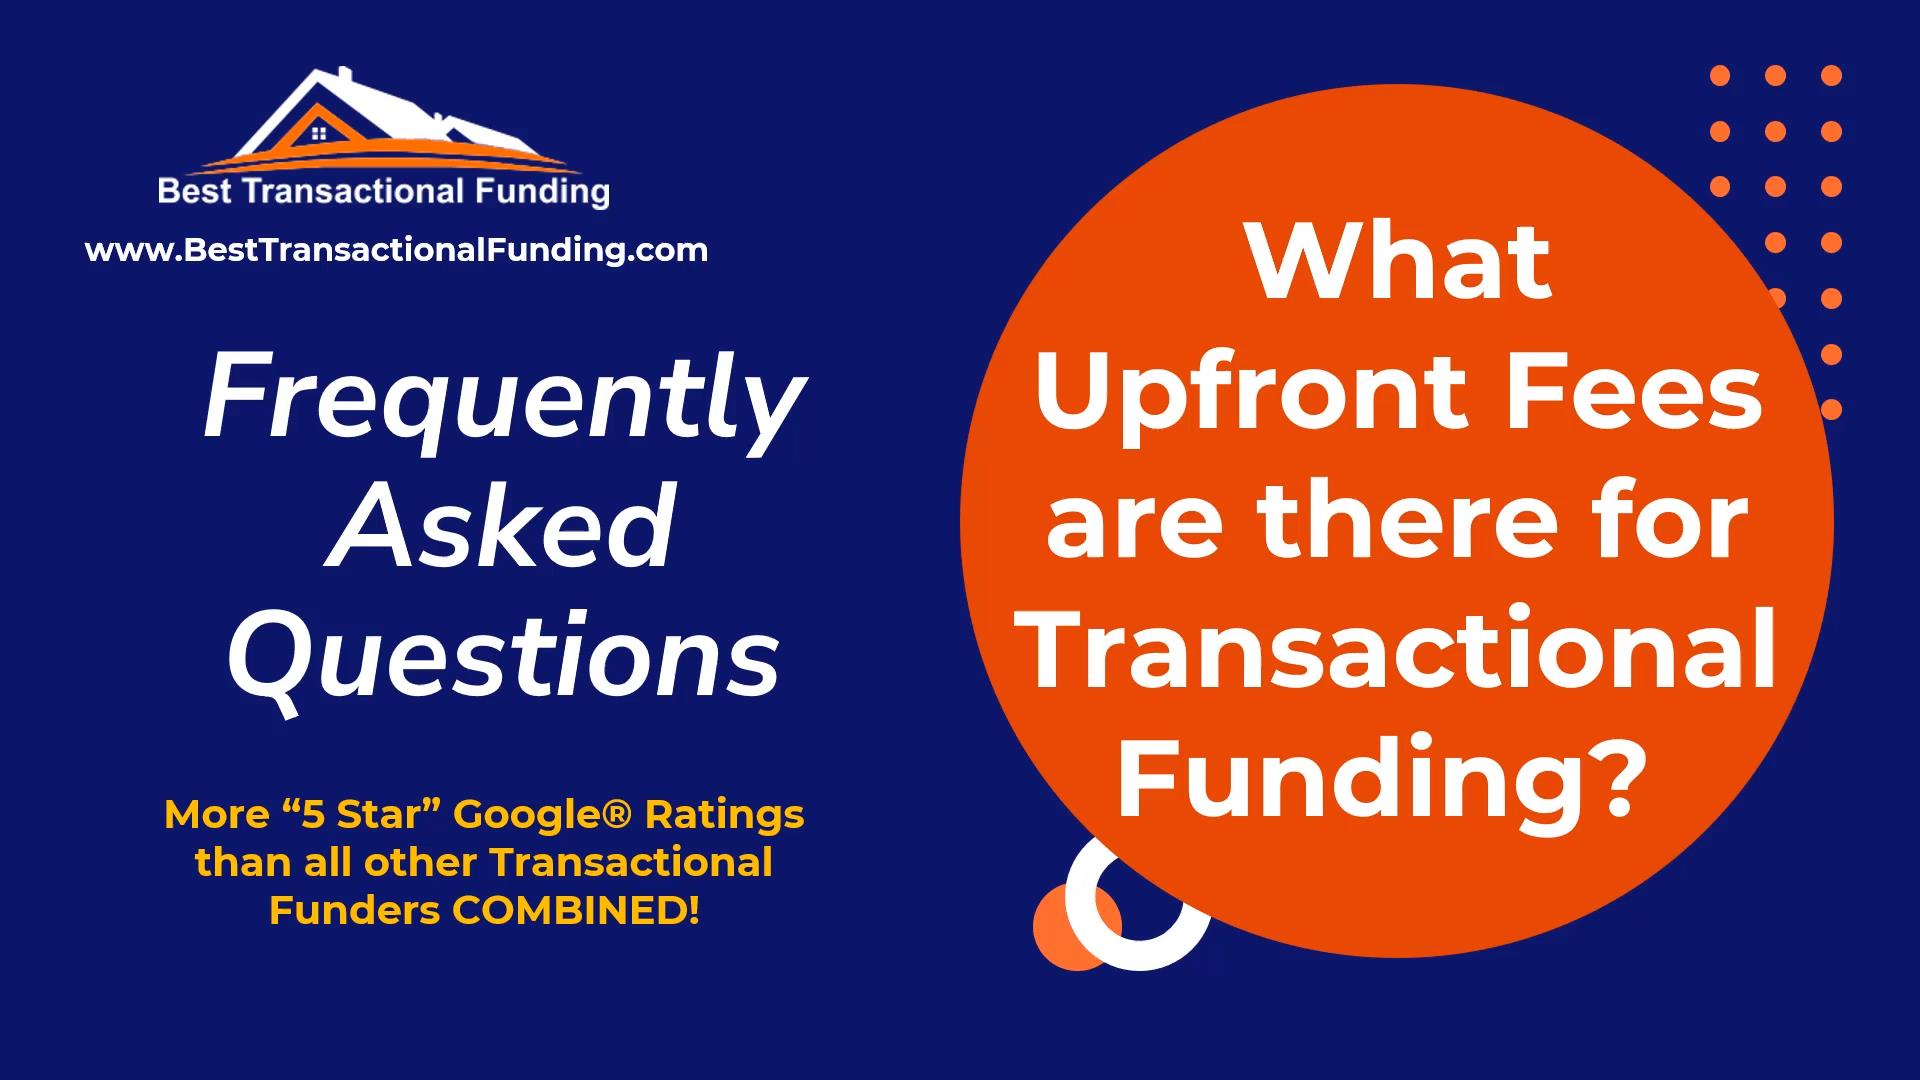 fees for transactional funding